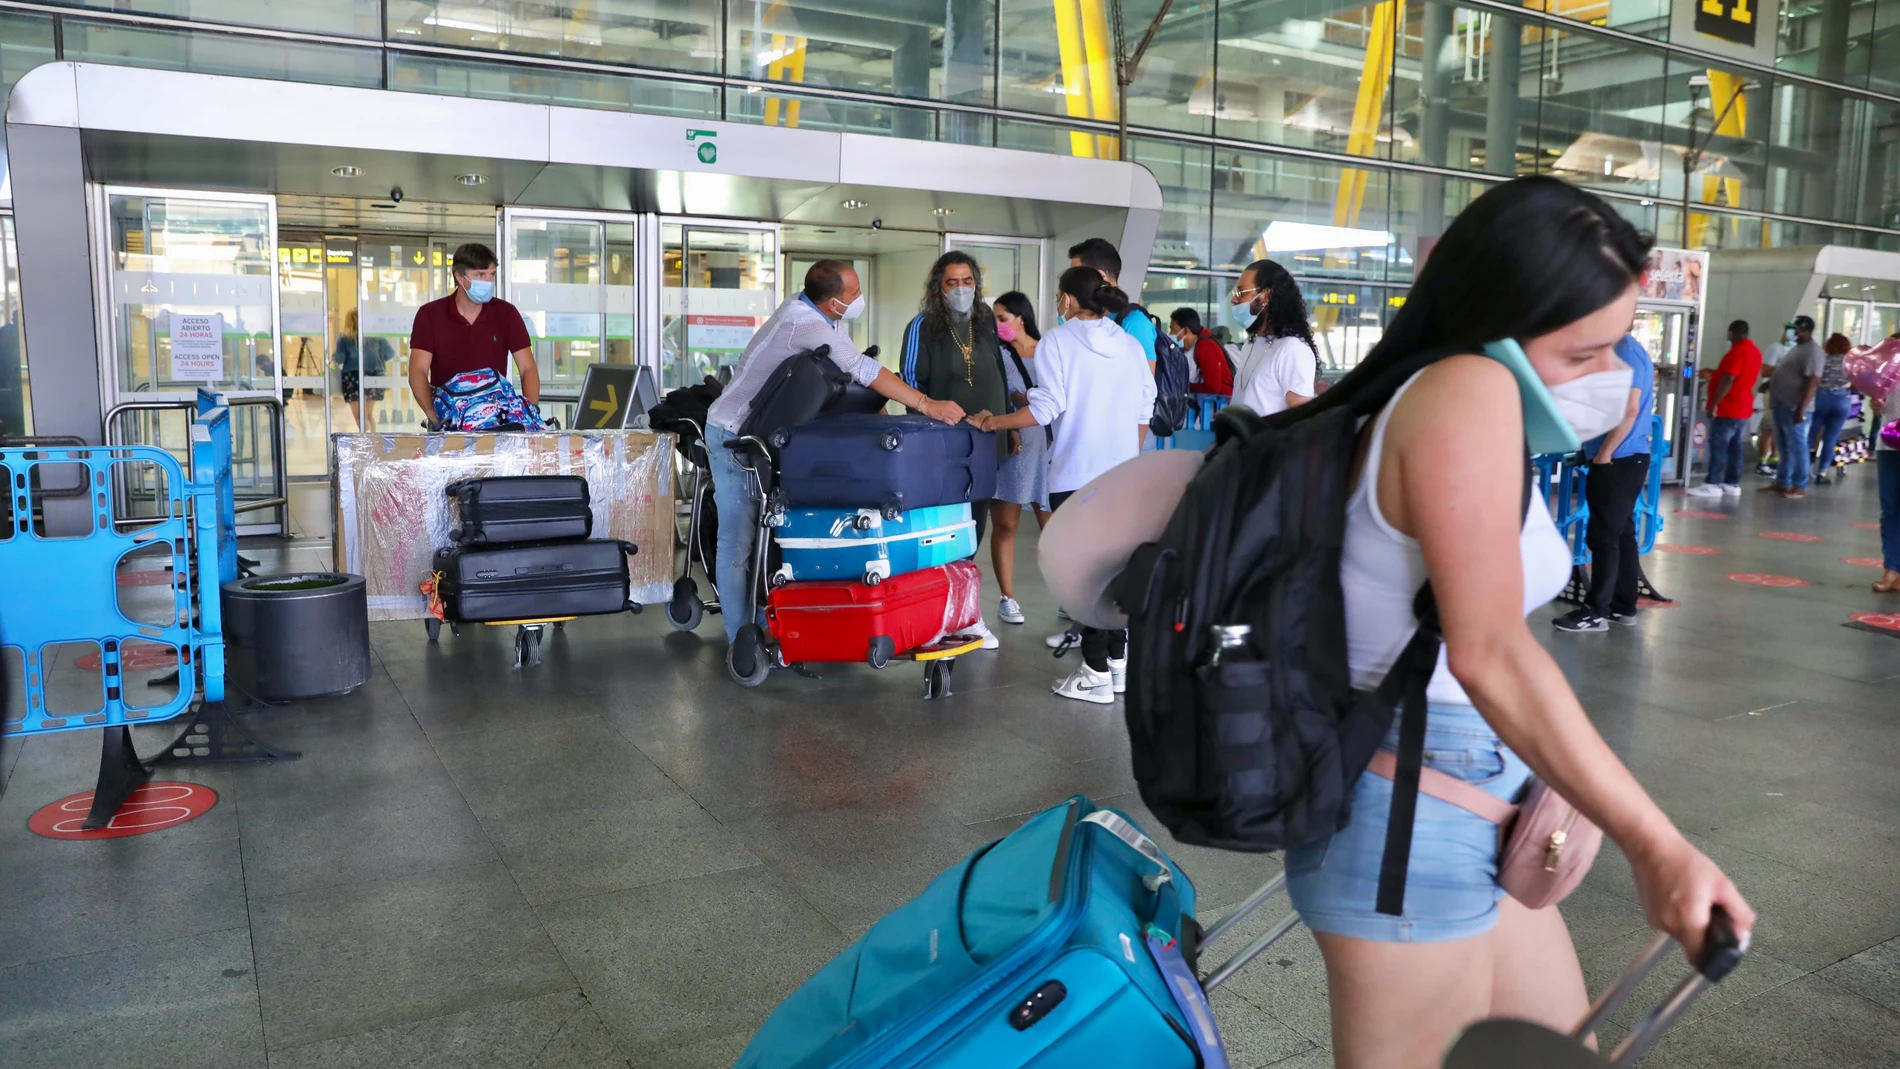 Viajeros que llegan al aeropuerto de Barajas, previa presentación de una prueba Covid negativa. Terminal 4.